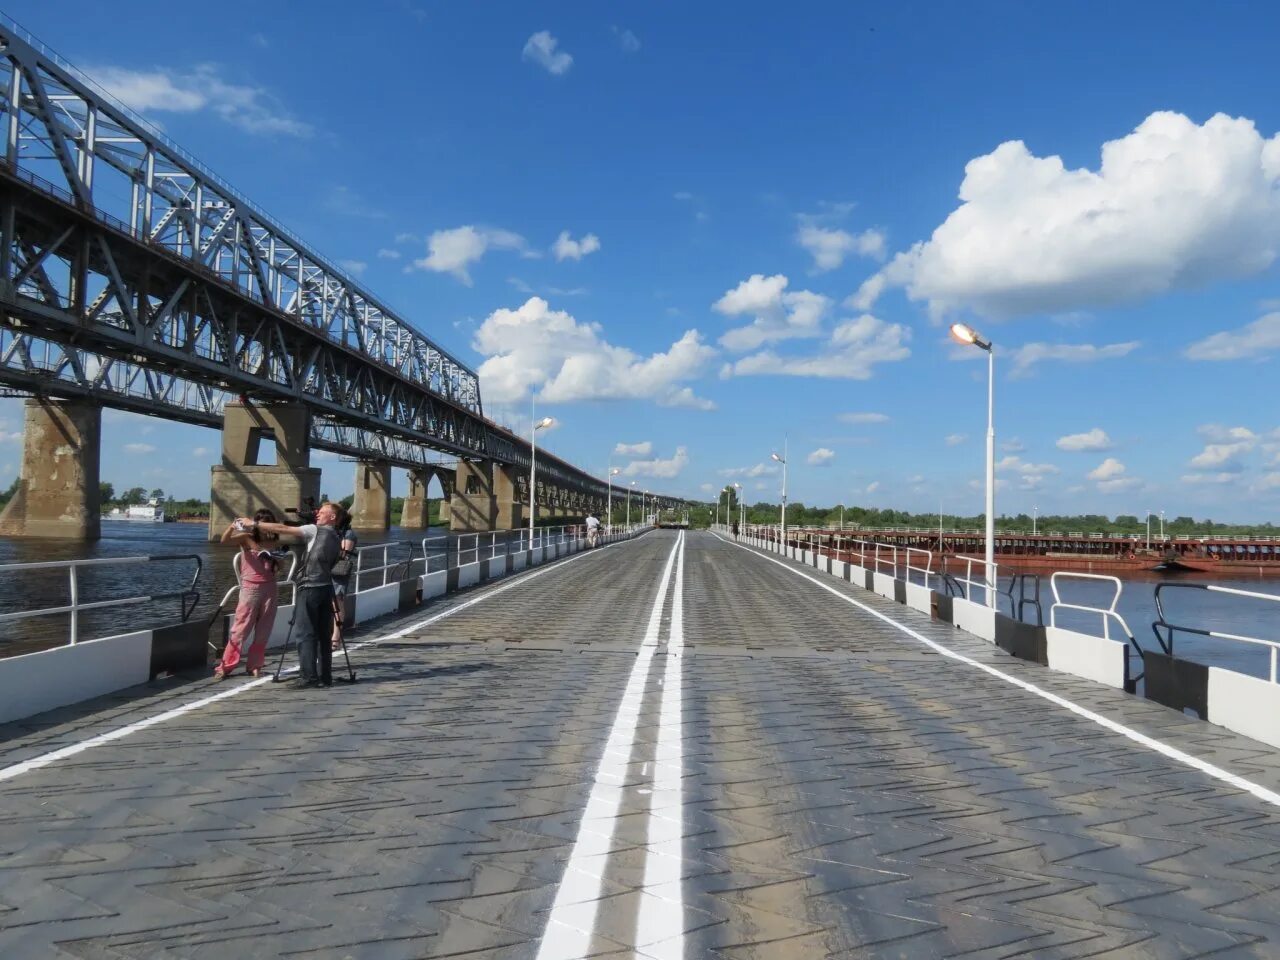 Мост через оку камера. Новый мост в Нижнем Новгороде. Новый мост через оку в Нижнем Новгороде. Мост через оку бульвар Заречный. Мост через оку дублер Гагарина.